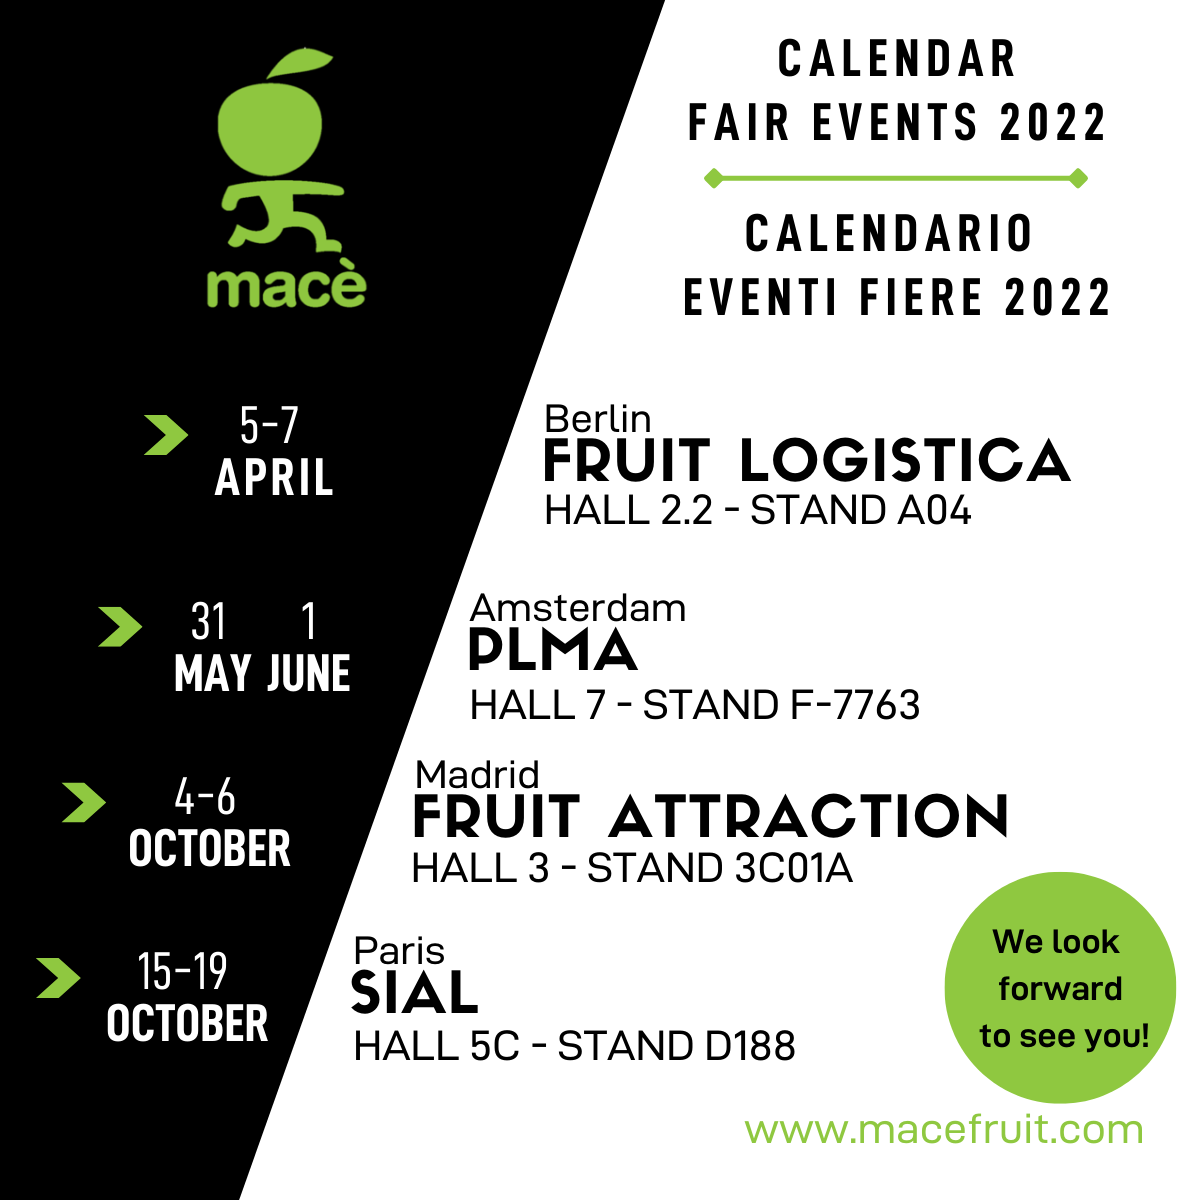 calendrier des foires 2022 auxquelles Mac participe : fruit logistica 5-7 avril, PLMA 31 mai 1er juin, fruit attraction 4-6 octobre, SIAL 15-19 octobre